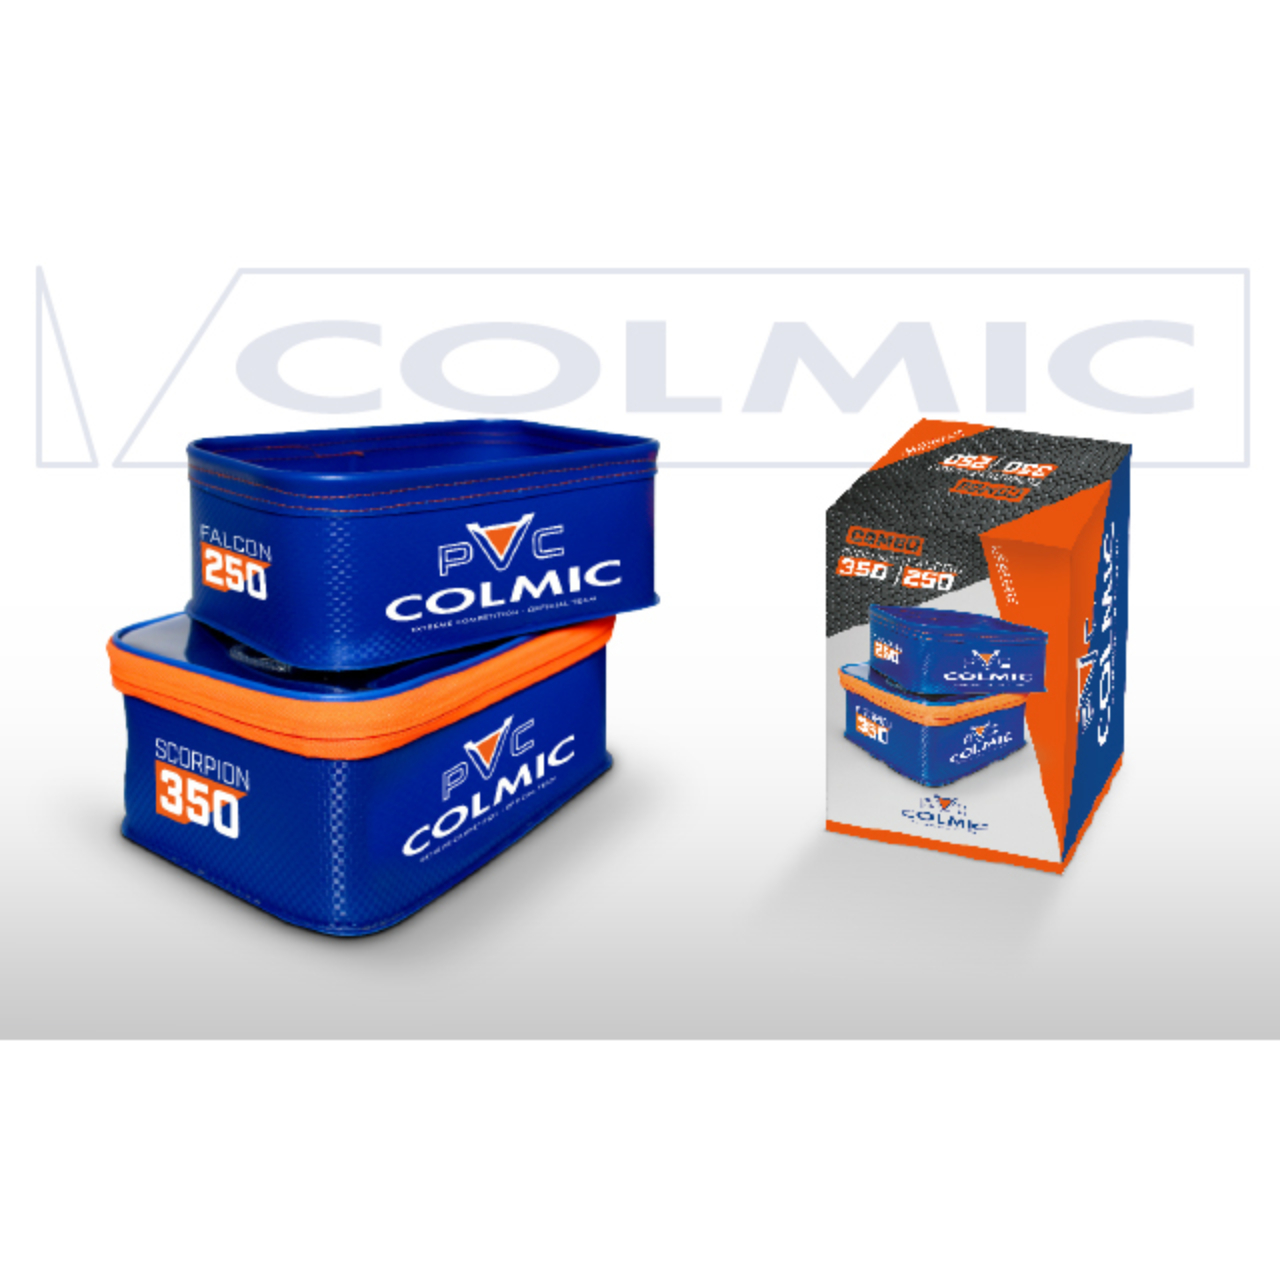 colmic PVC: COMBO SCORPION BOXEVA405.jpg